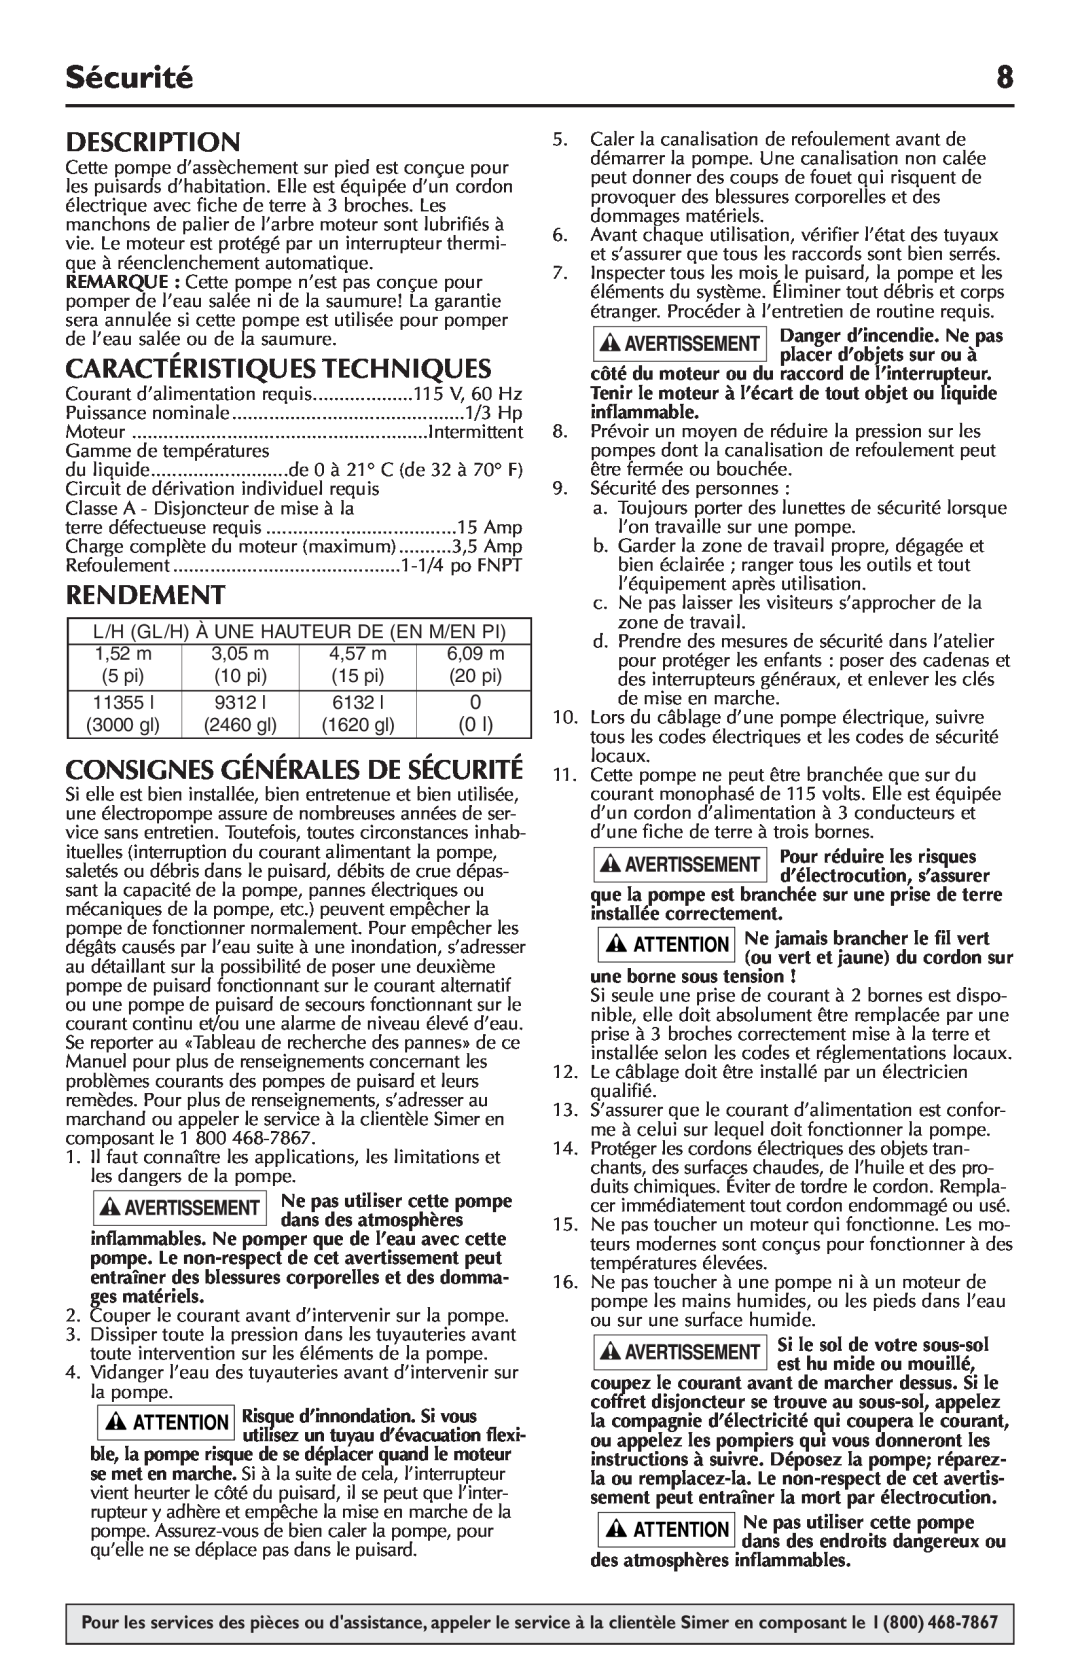 Simer Pumps 5020B-04 owner manual Caractéristiques Techniques, Rendement, Consignes Générales De Sécurité, Description 